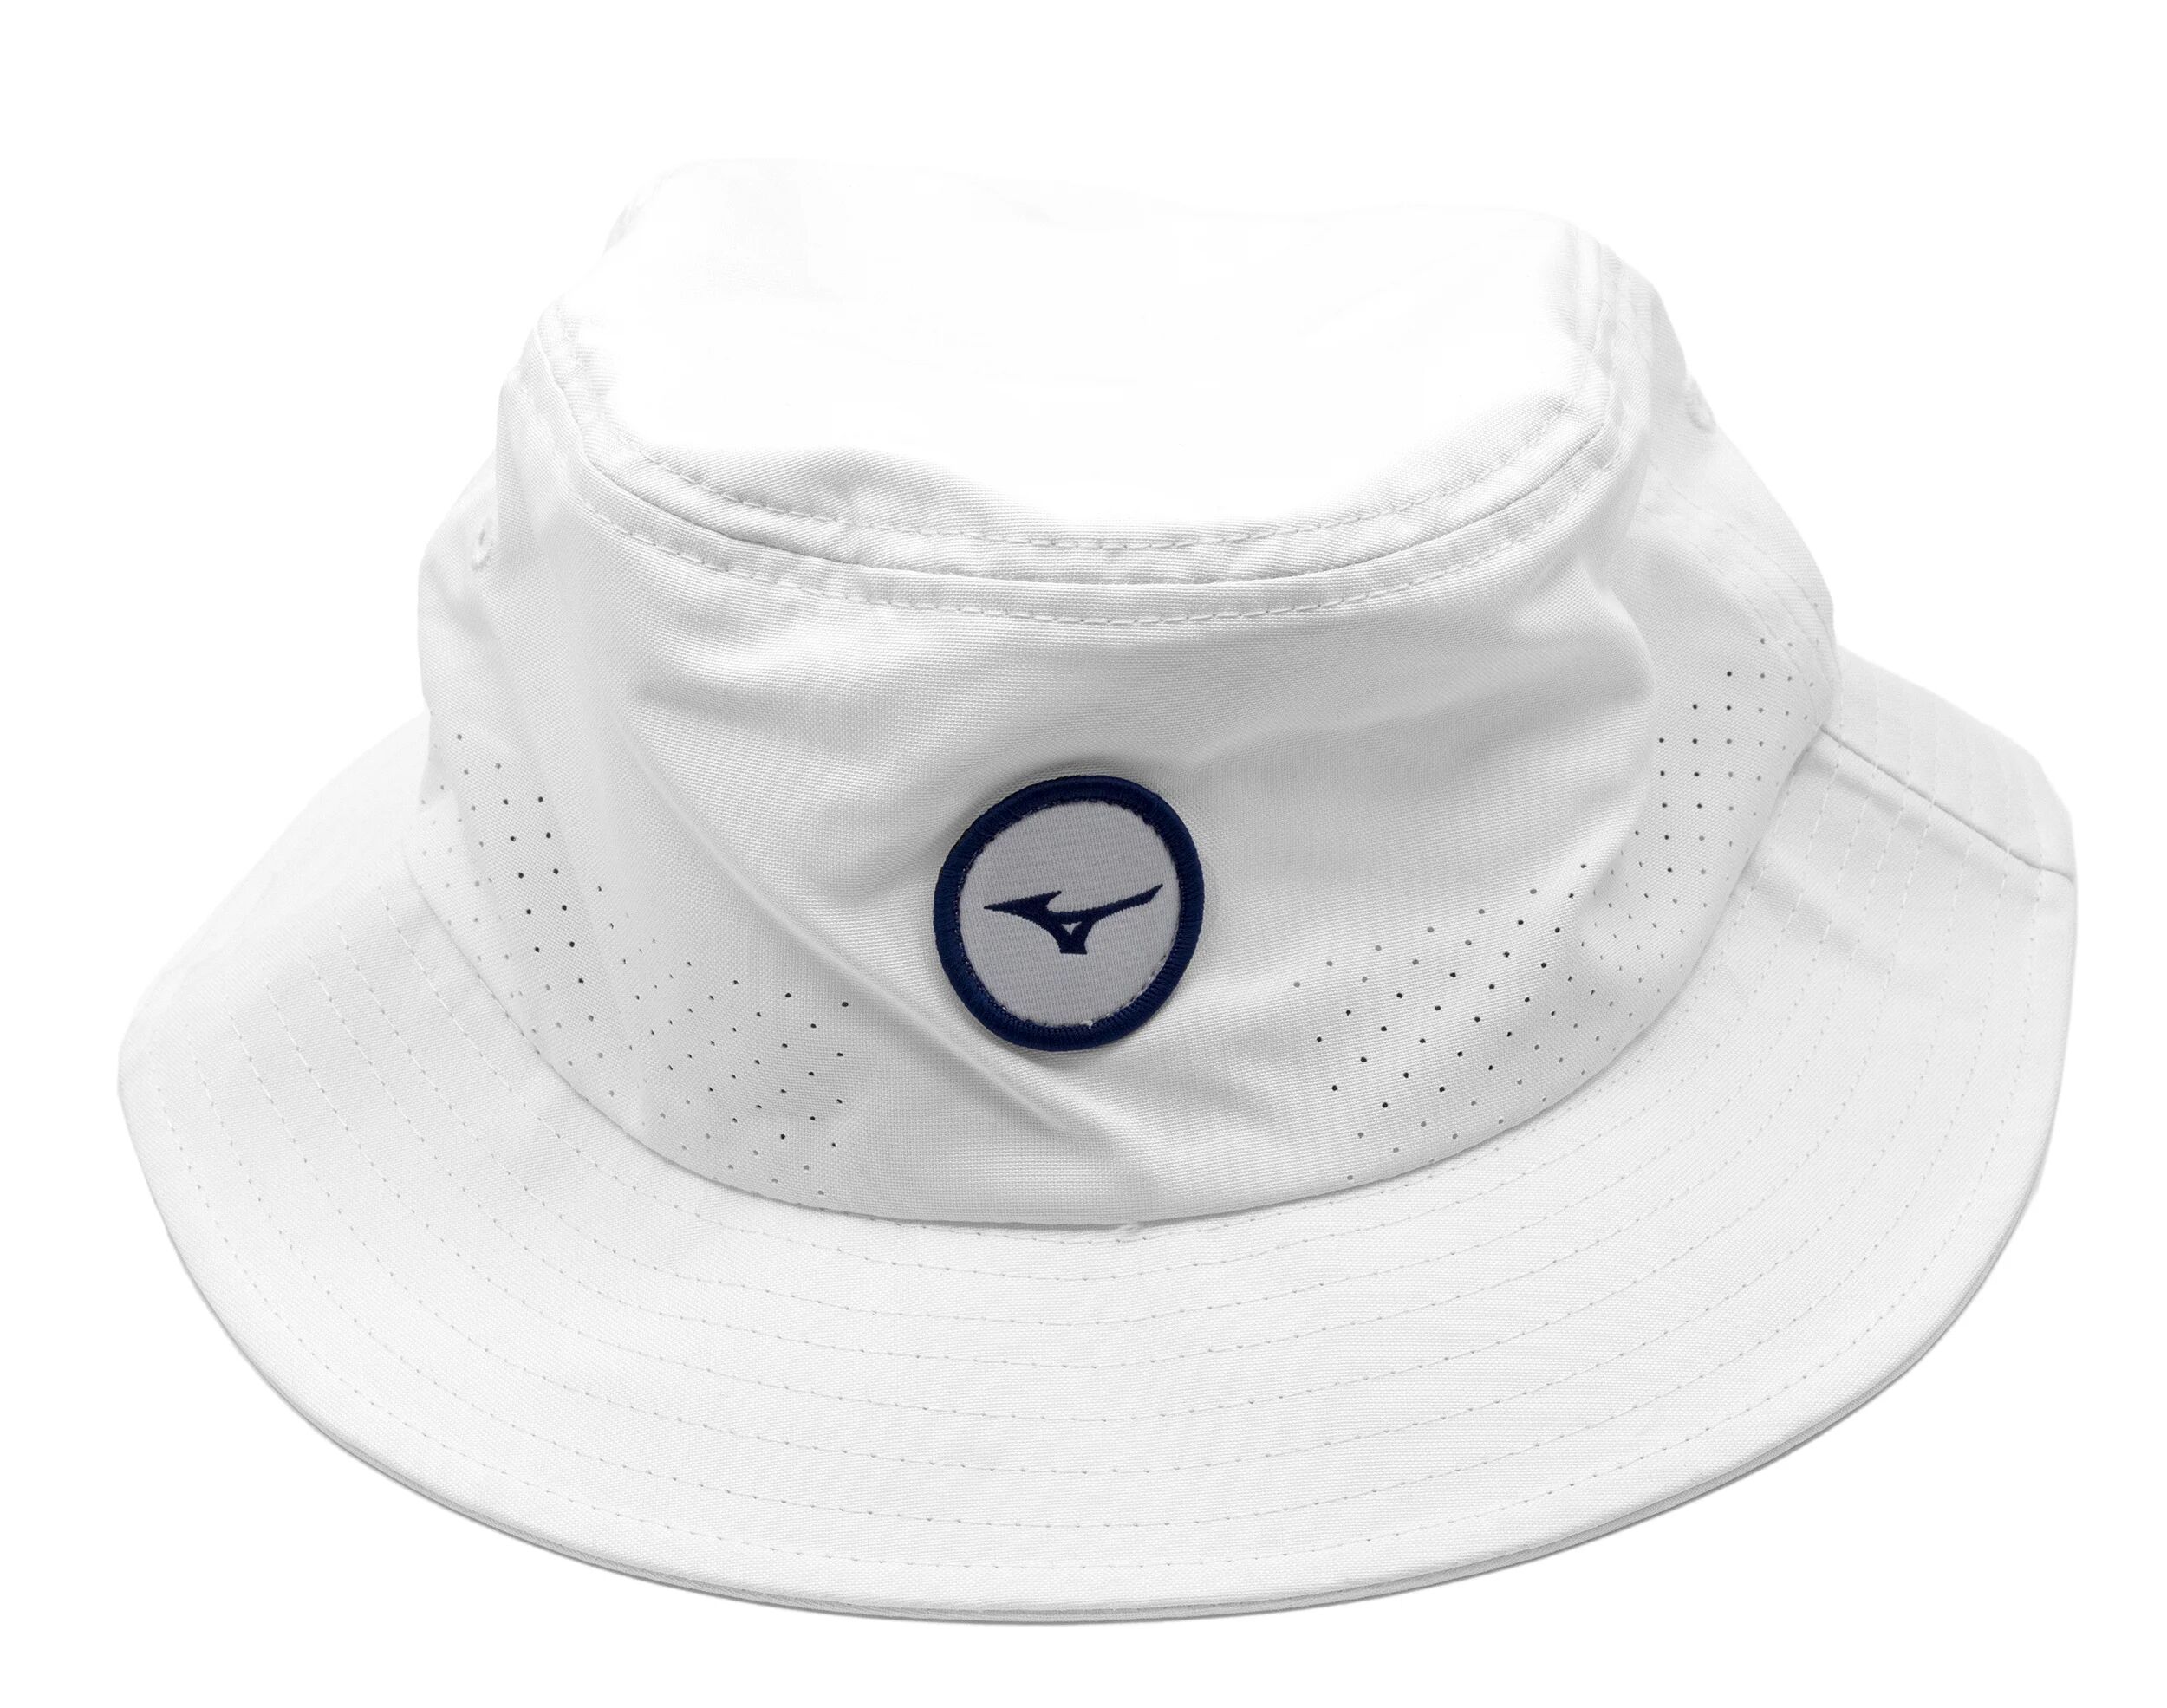 Mizuno Tour Men's Golf Bucket Hat - White, Size: Large/X-Large